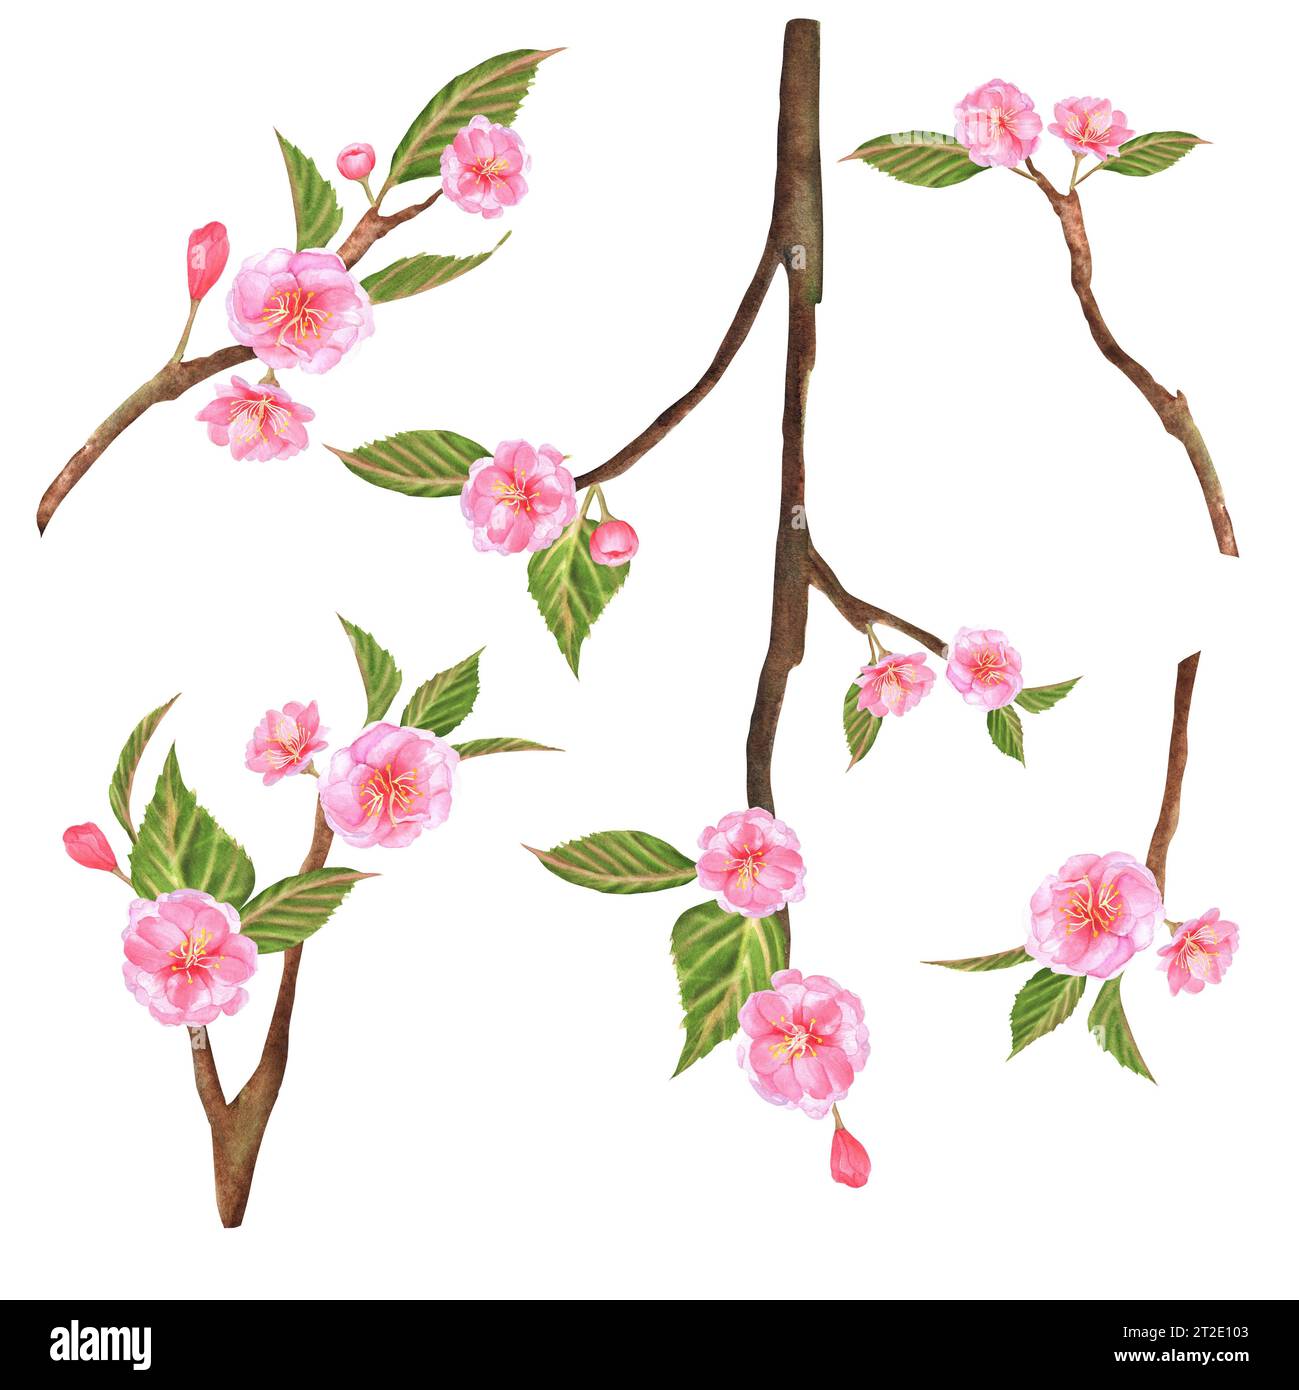 Illustrations à l'aquarelle dessinées à la main. Branches Sakura avec des fleurs roses et des feuilles vertes. Banque D'Images